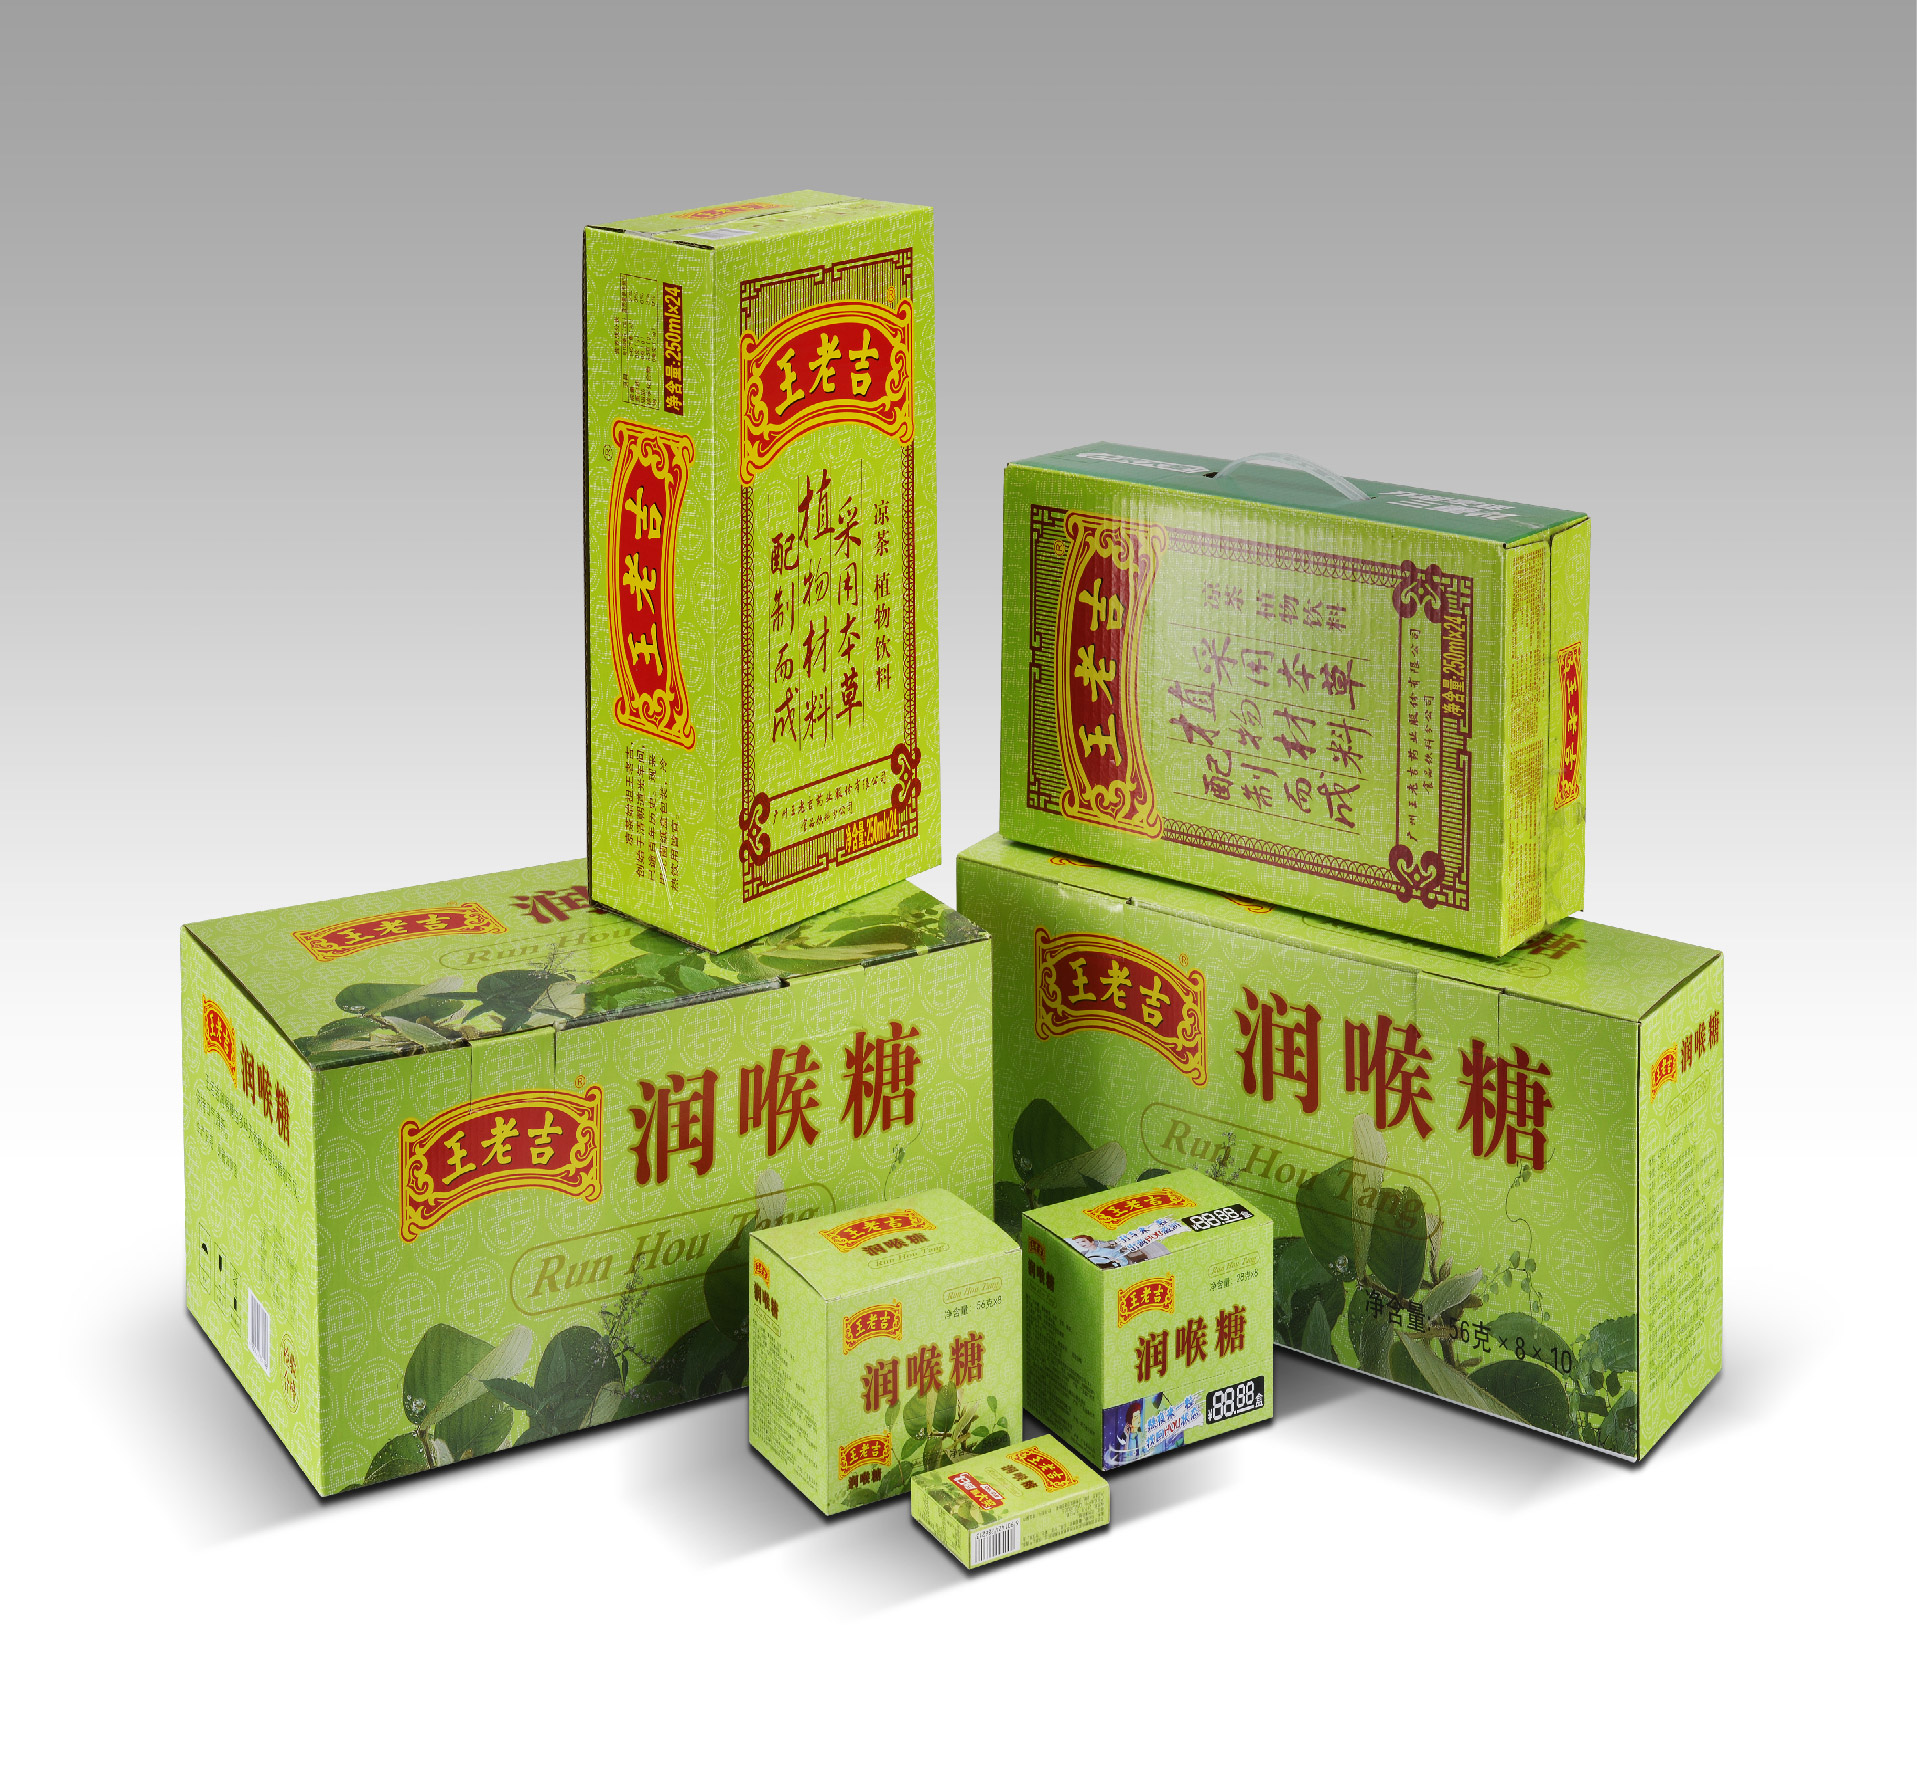 王老吉绿包凉茶纸箱/润喉糖系列